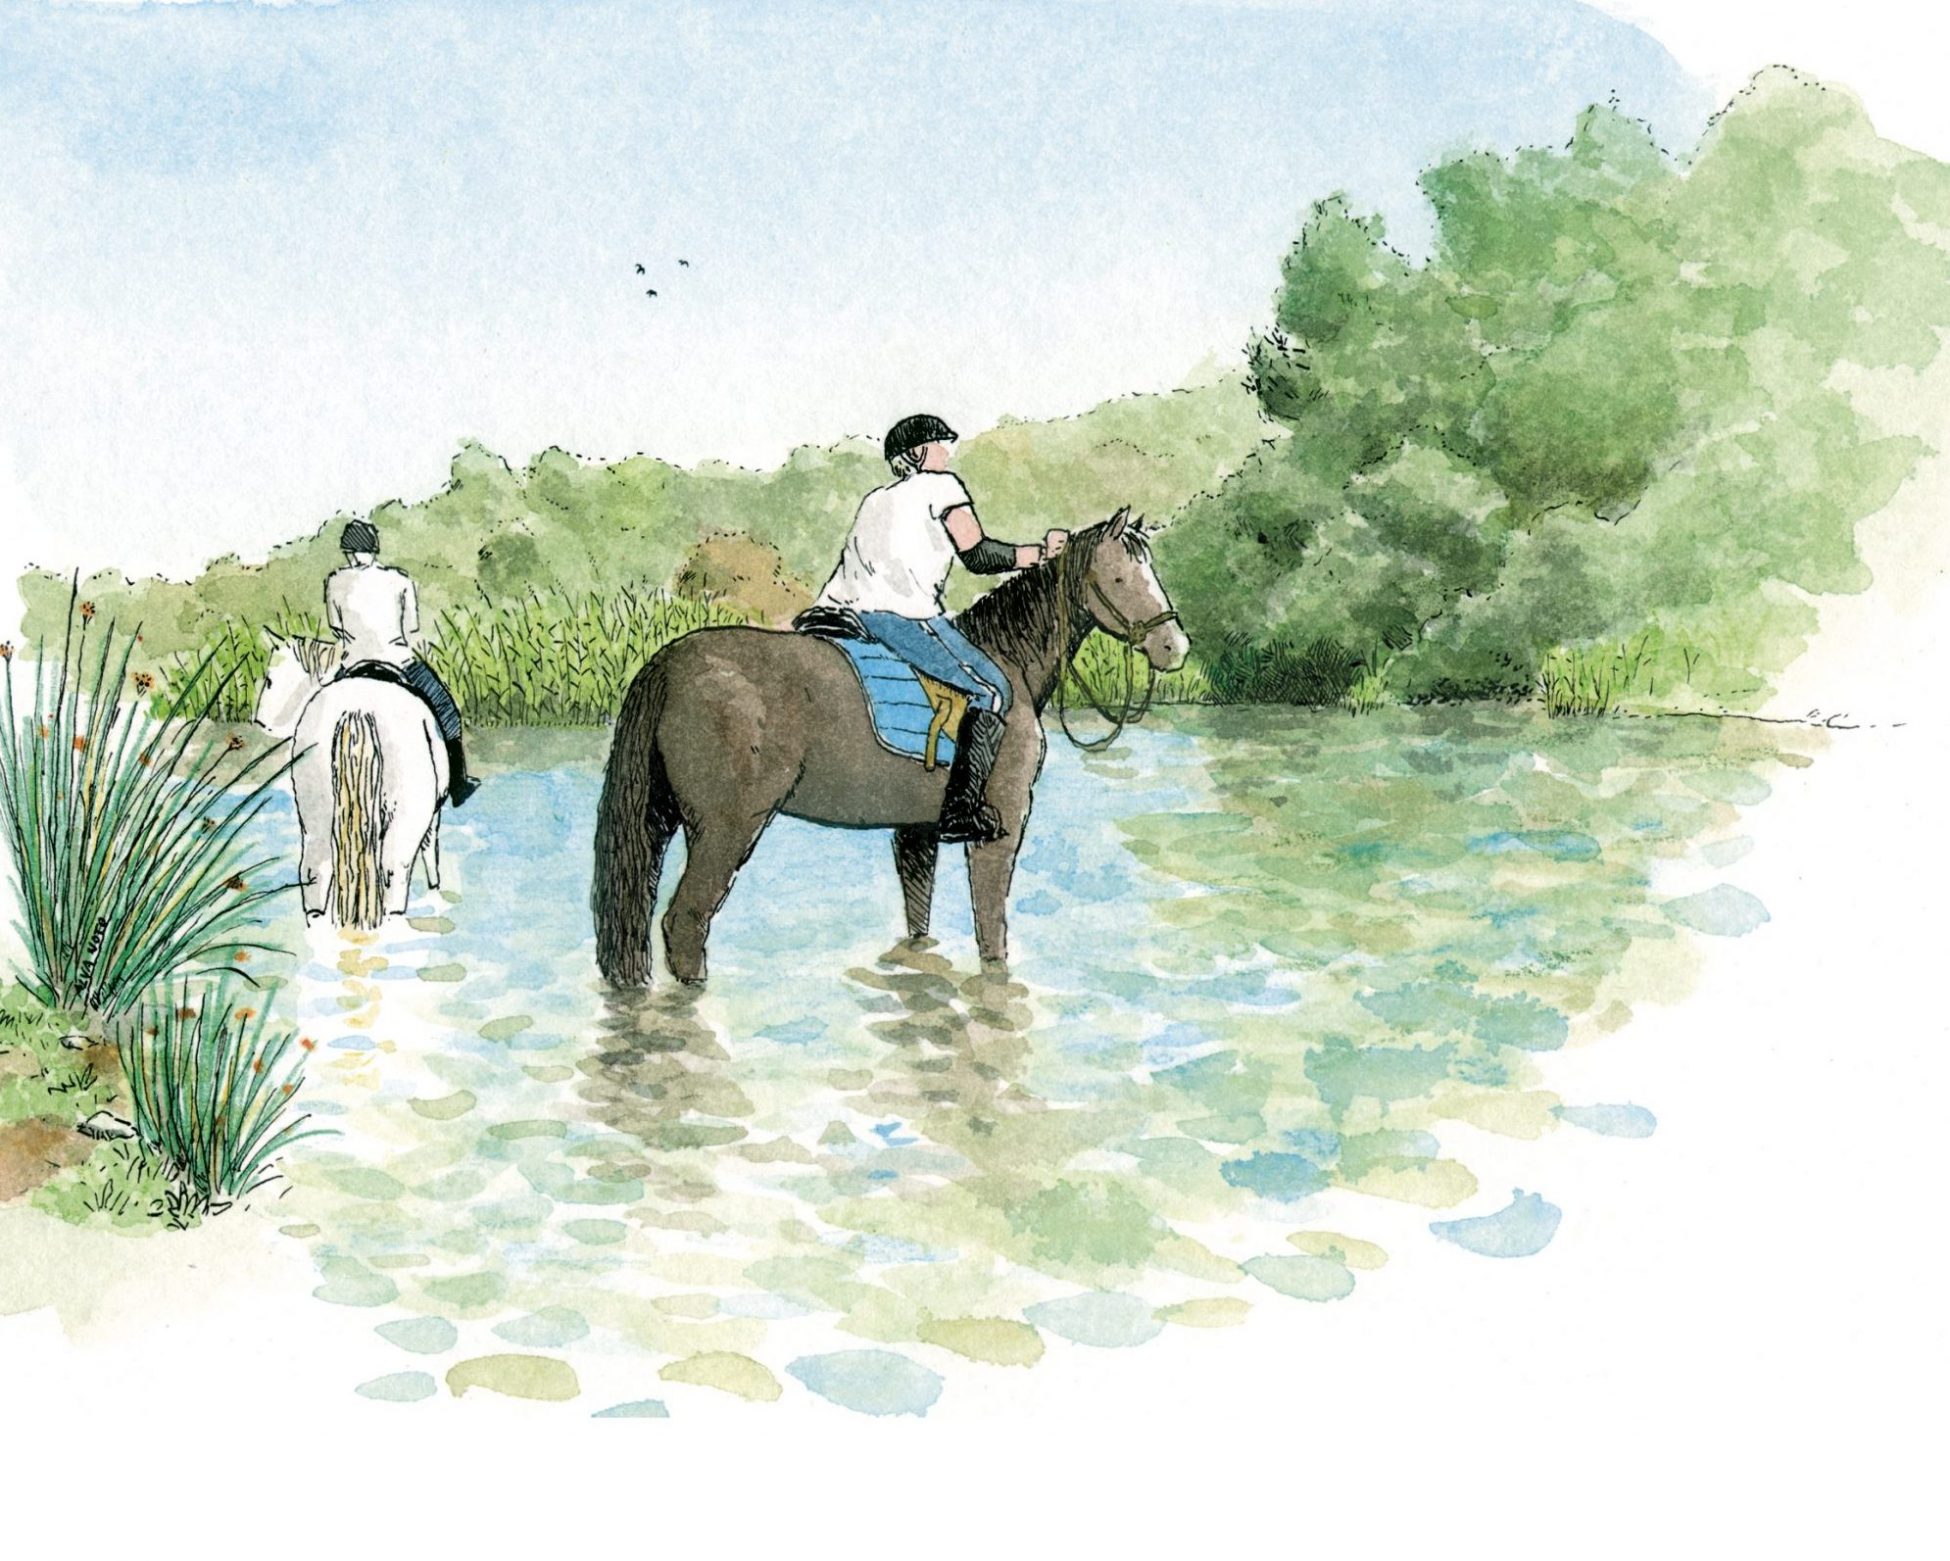 Dibujo de dos caballos en el rio bullent en el parque natural de la marjal pego oliva. Valencia